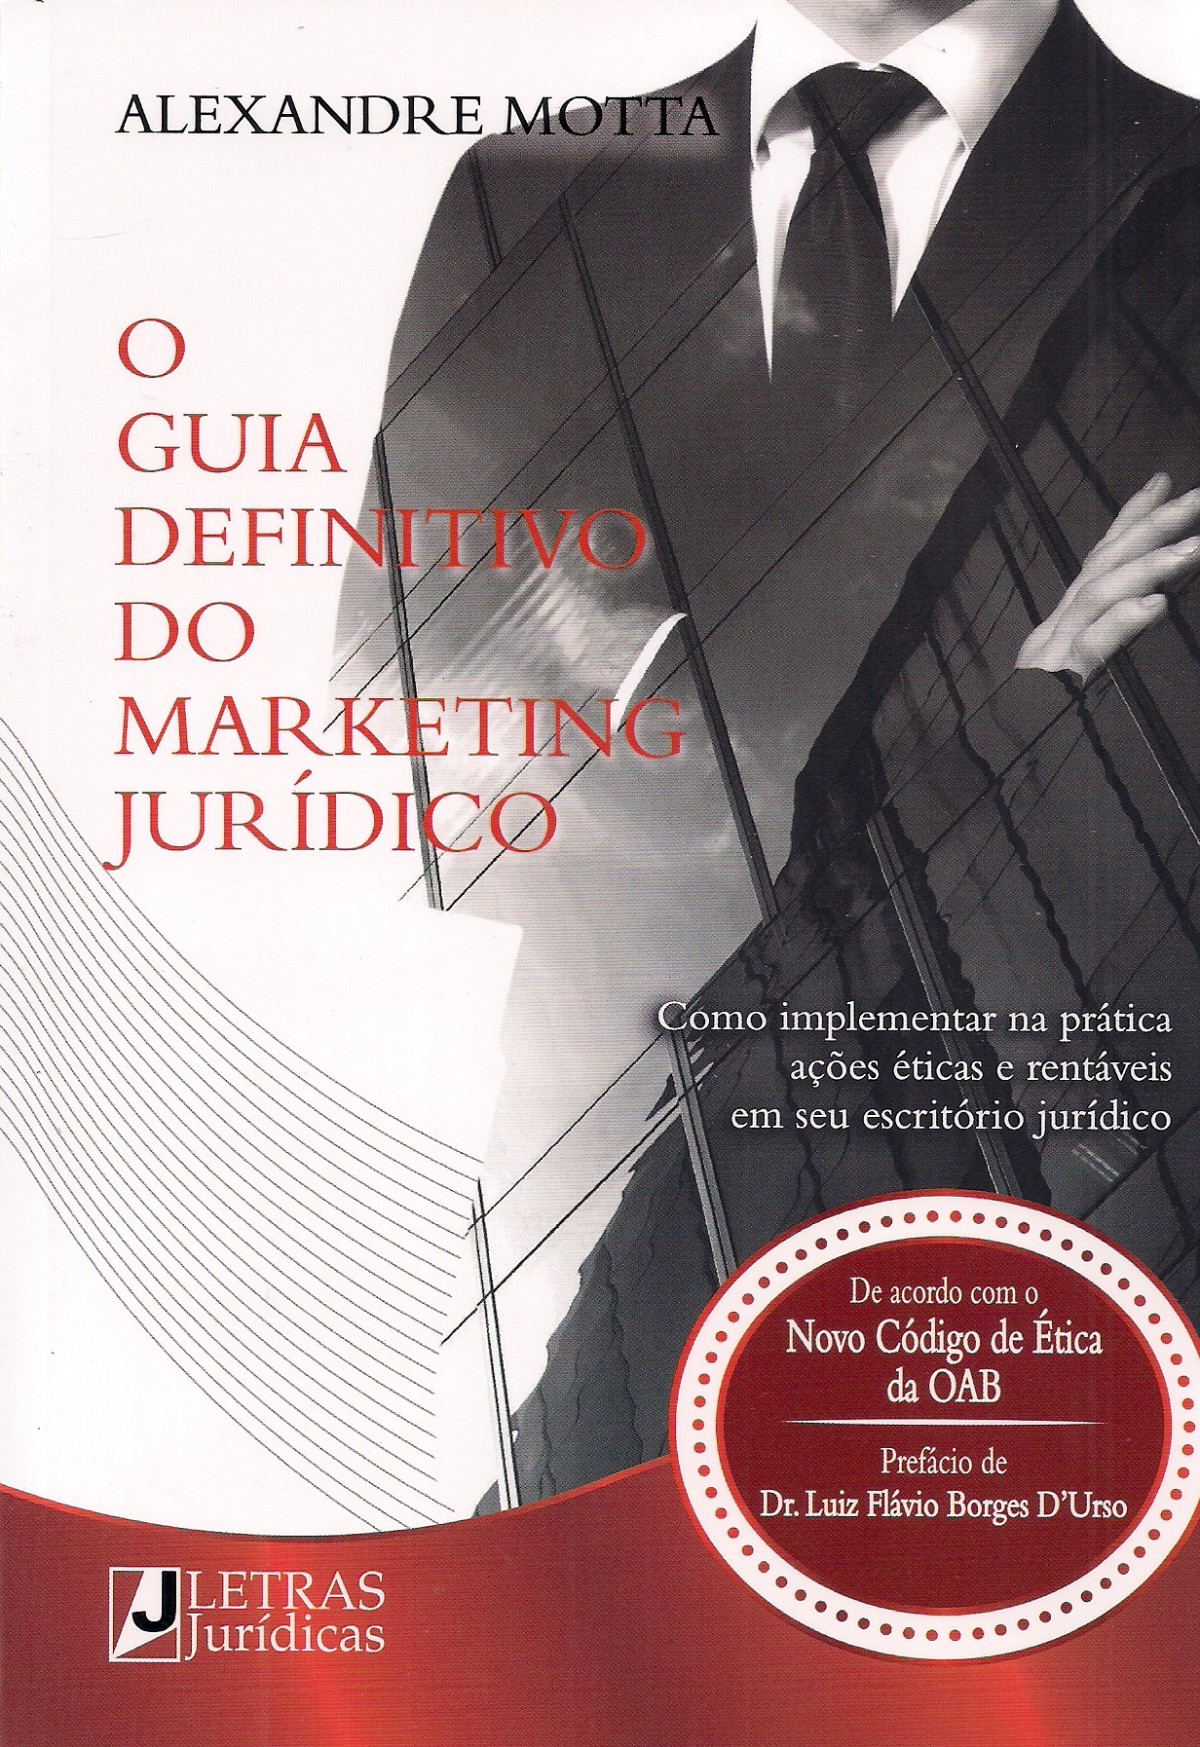 Foto 1 - O Guia Definitivo do Marketing Jurídico